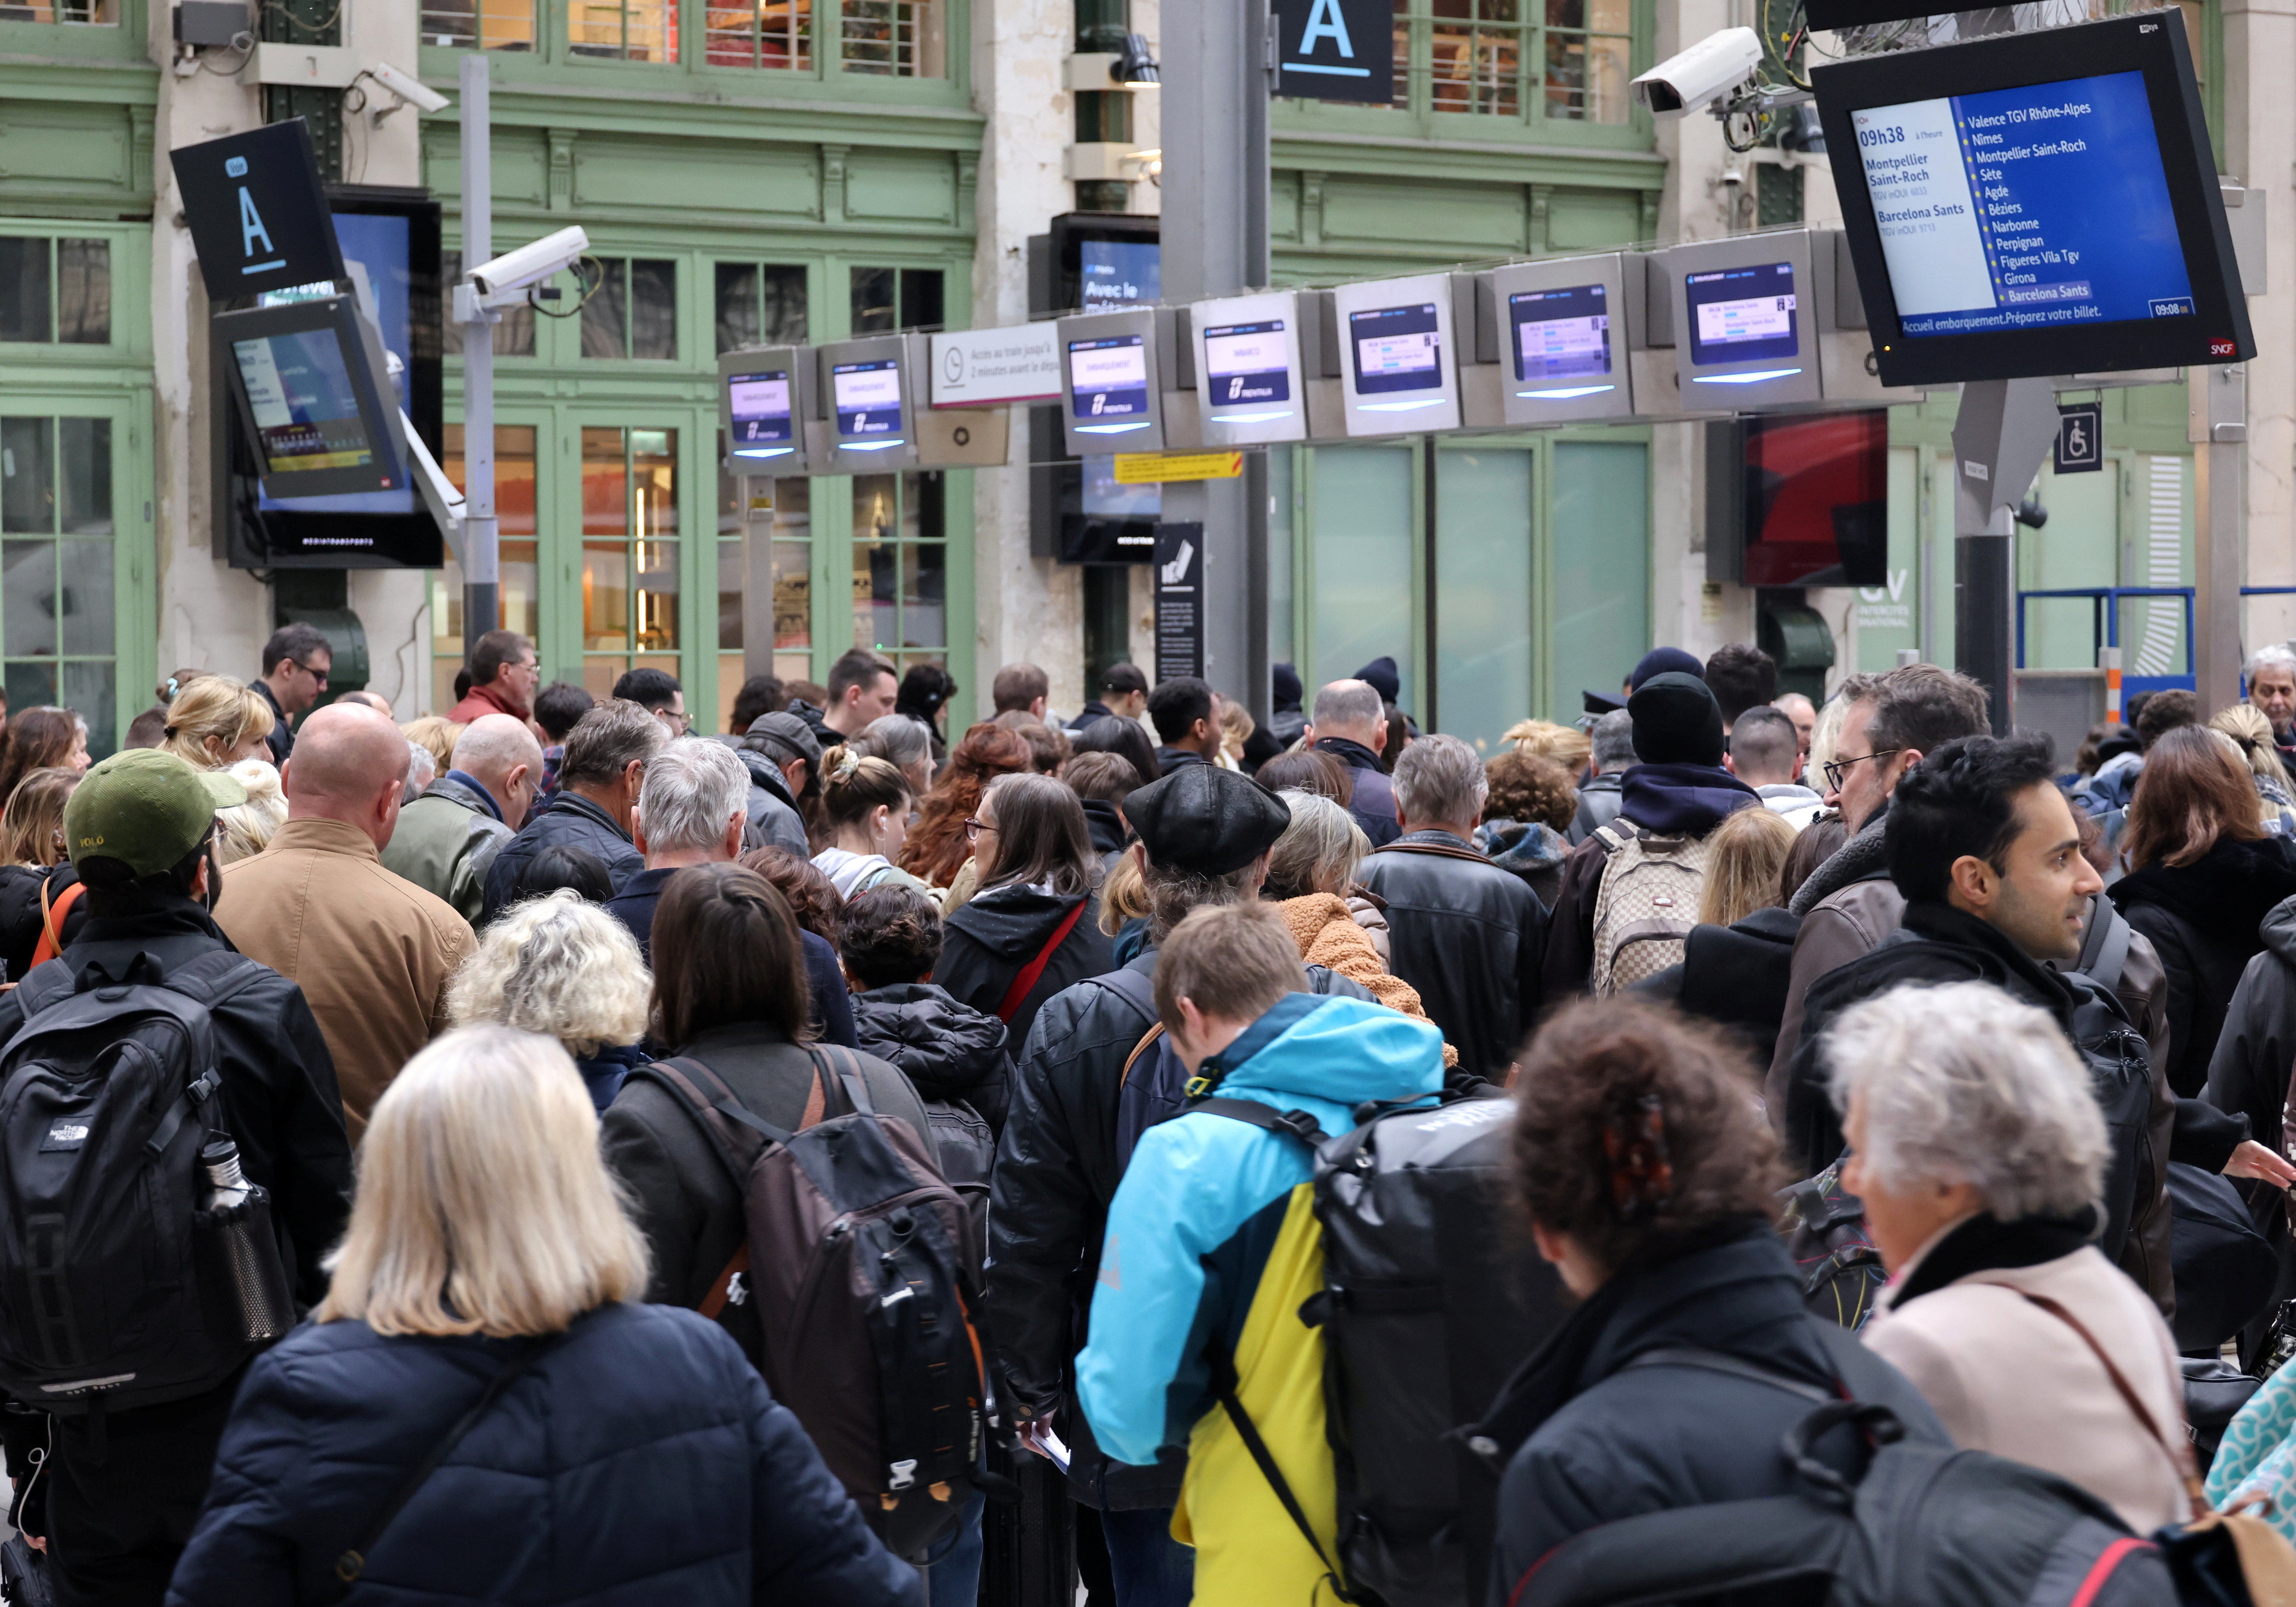 Le mouvement de grève contre la réforme des retraites charrie son lot de voyageurs en attente dans les gares, comme ici lors de la journée de mobilisation du 23 mars. LP/Delphine Goldsztejn